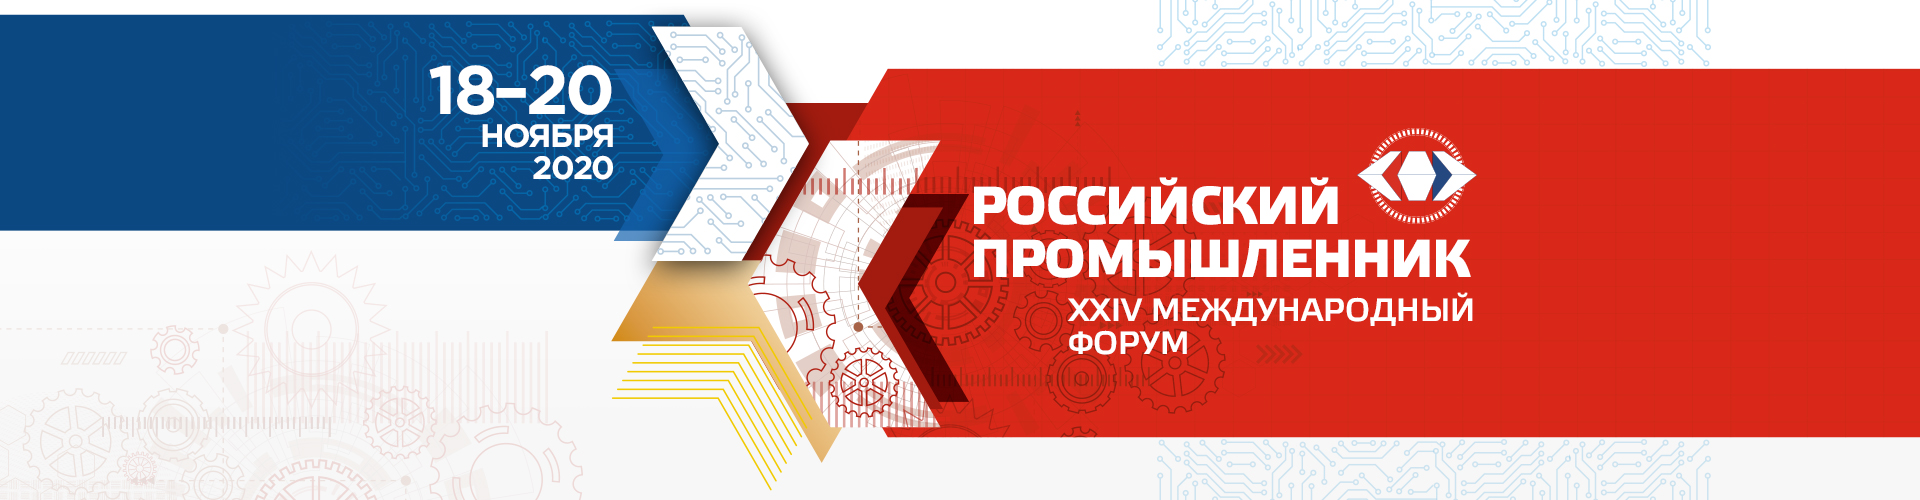 24-й международный форум "Российский Промышленник"